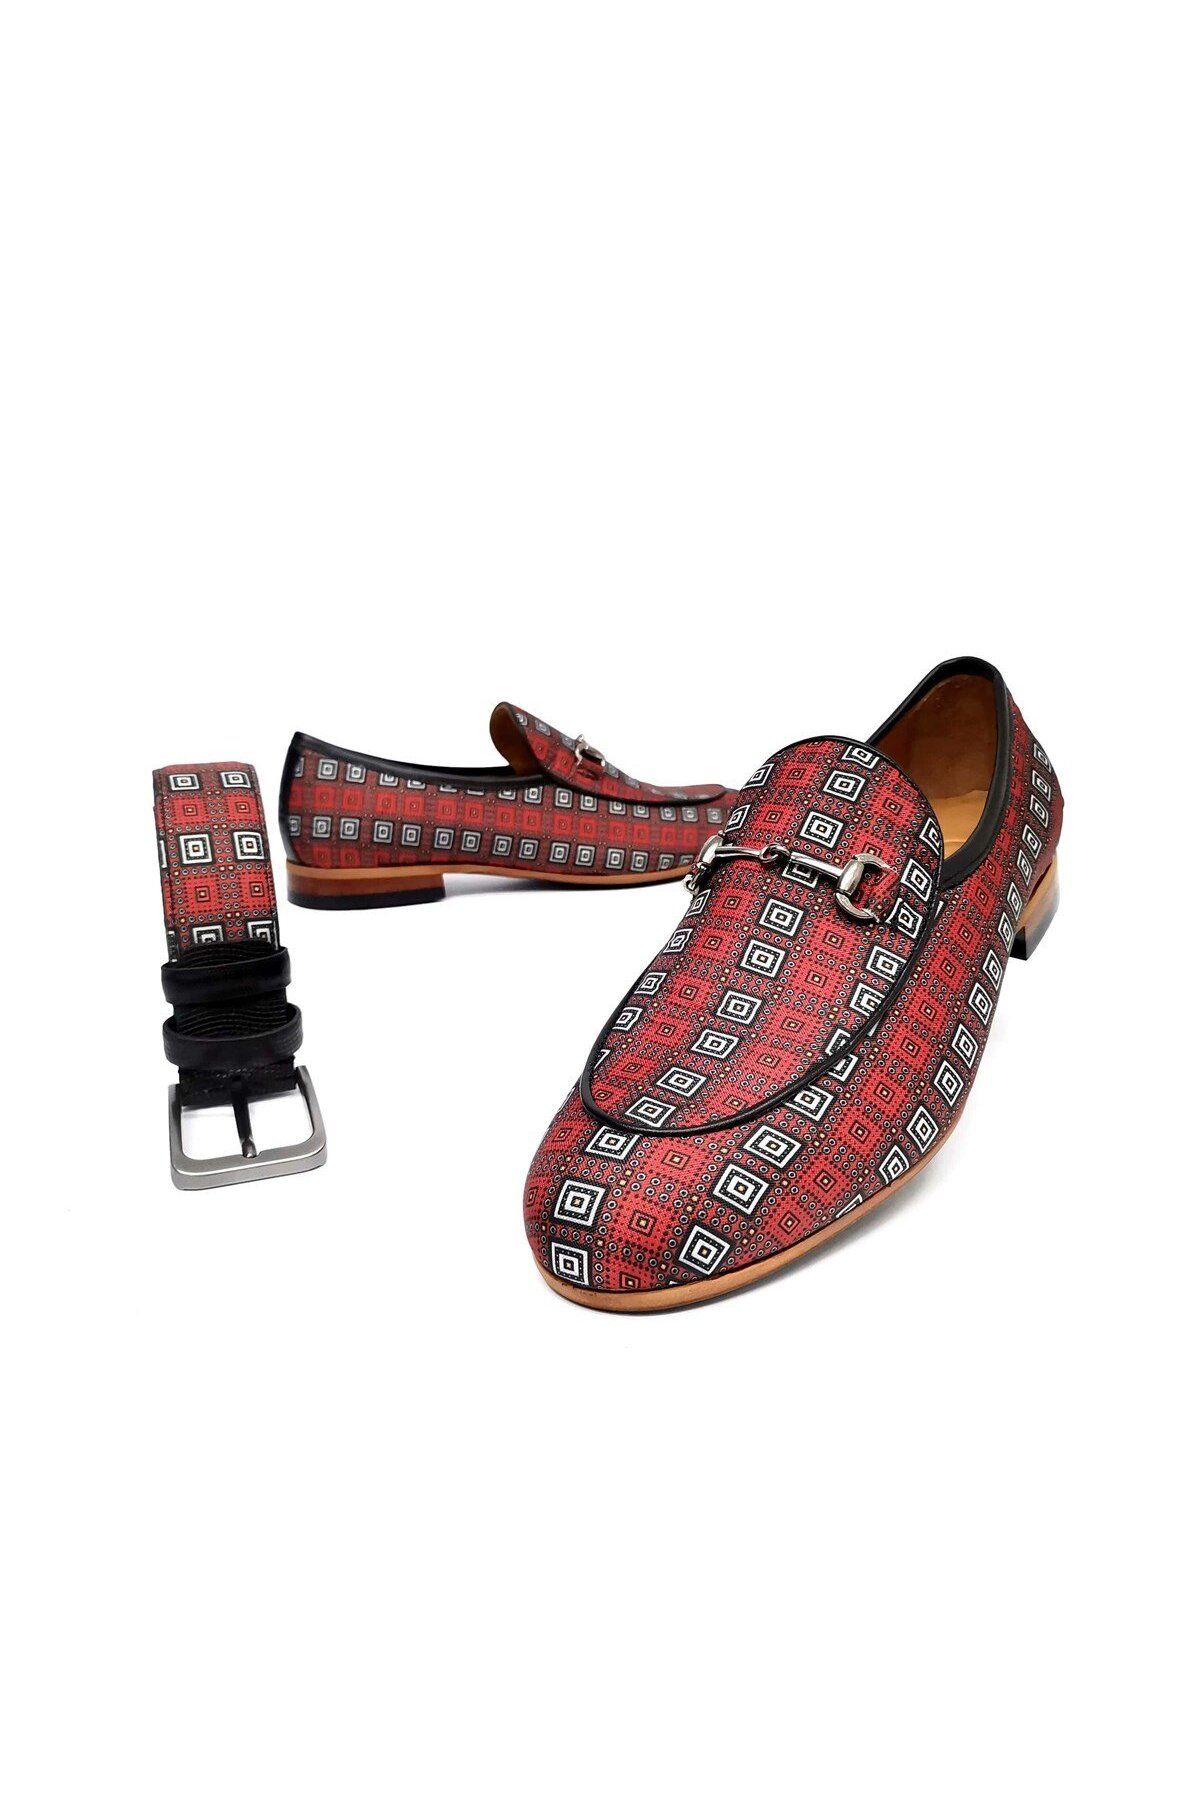 CassidoShoes Hakiki Deri Kırmızı Beyaz Kareli Zincir Detaylı Erkek Keten Ayakkabı Ve Kemer Set 022-3233